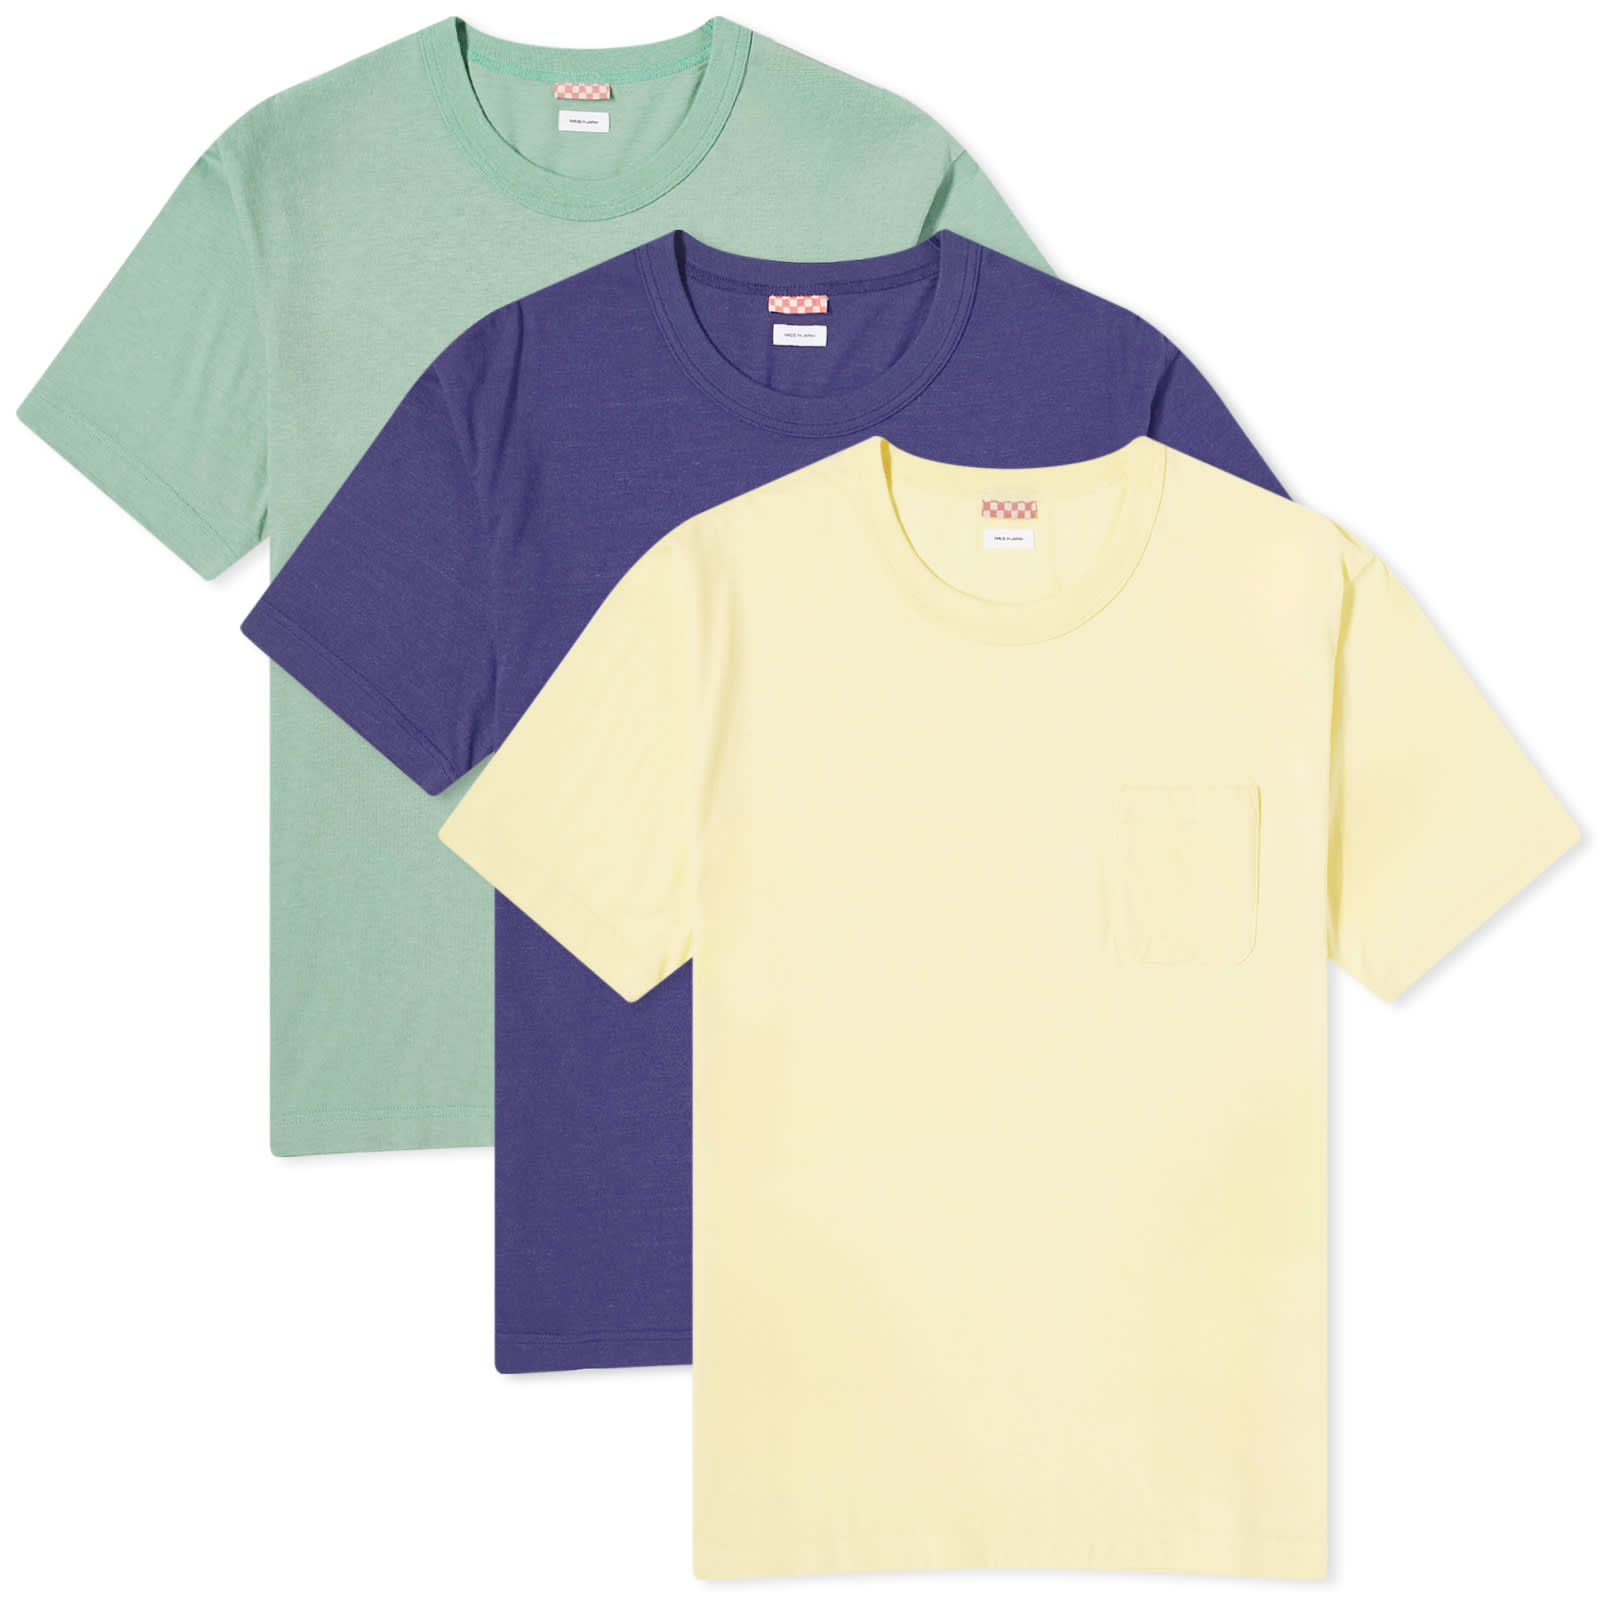 Комплект футболок Versace Embroidered Medusa, 3 предмета, зеленый/темно-синий/желтый